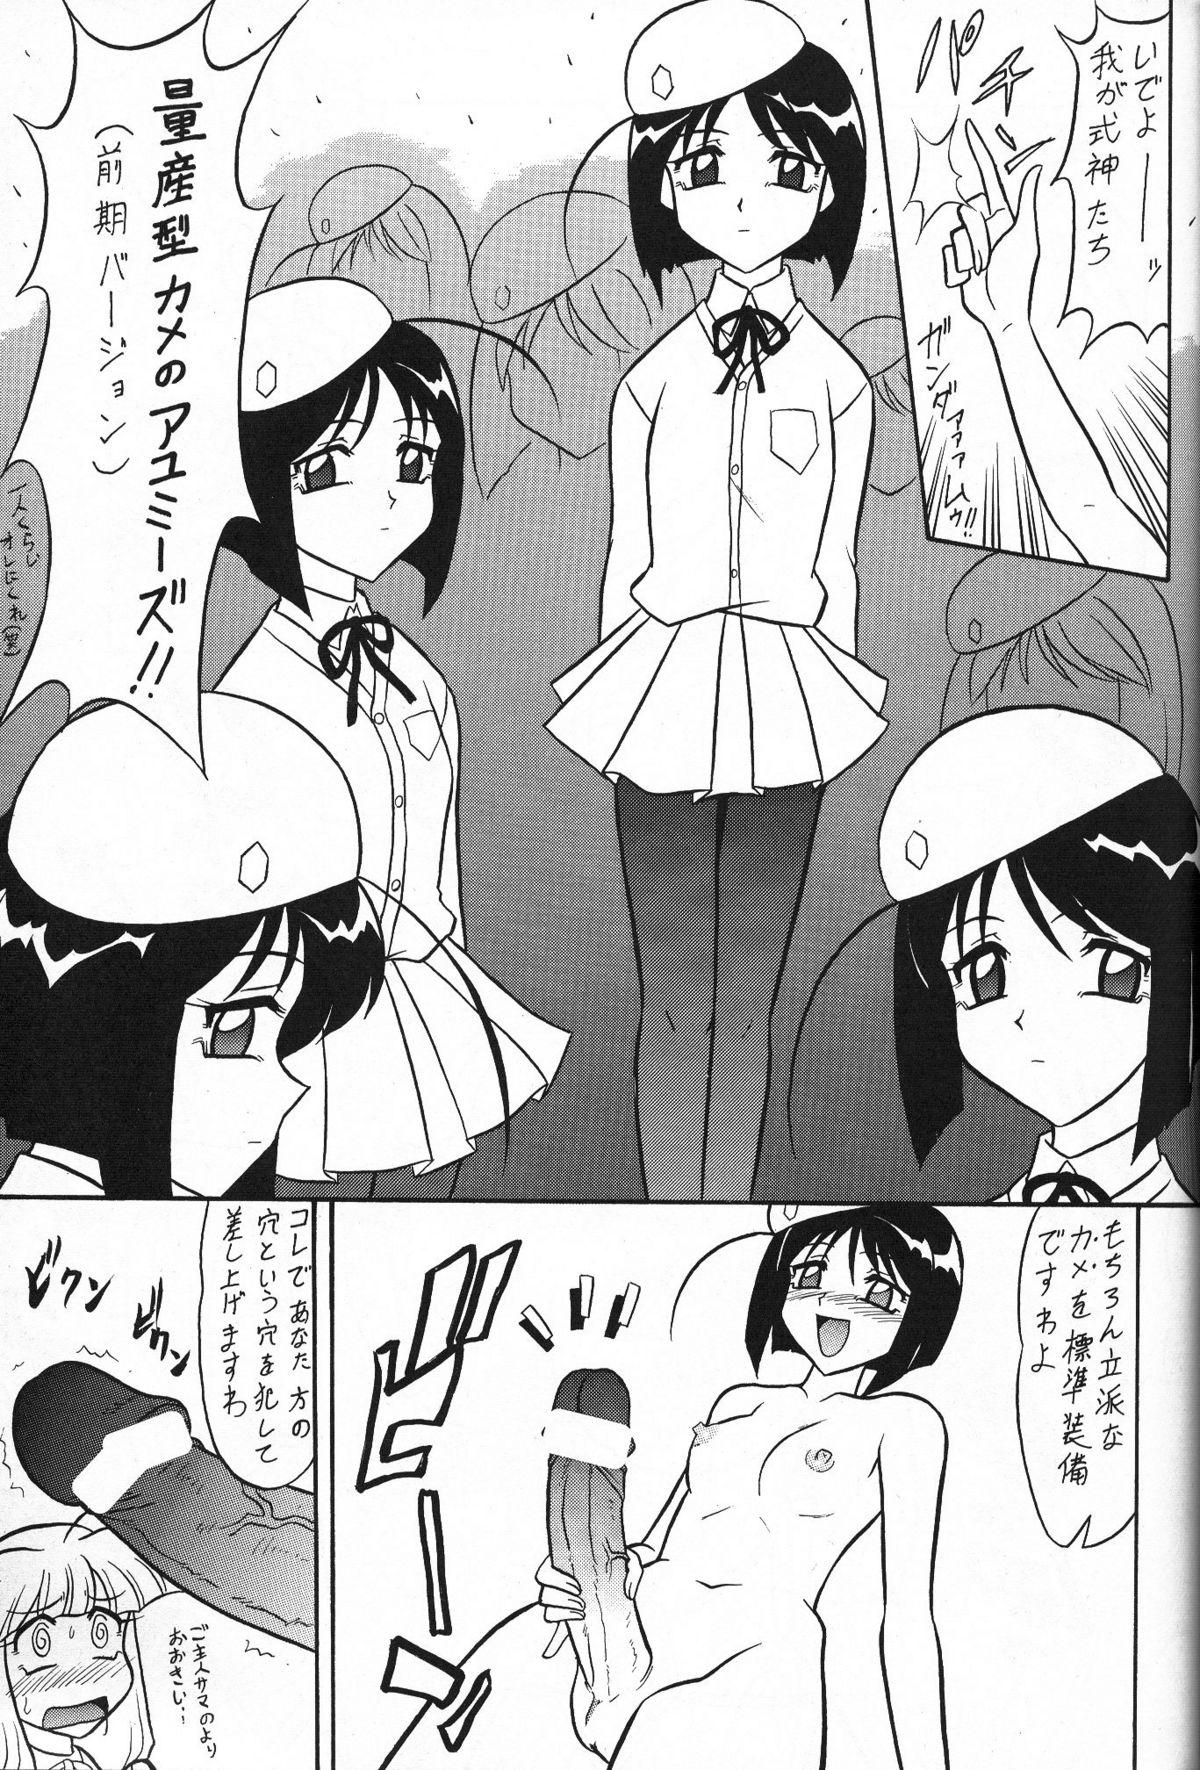 Rebolando Sugoi Ikioi 13 - Tenshi no shippo Futa - Page 6